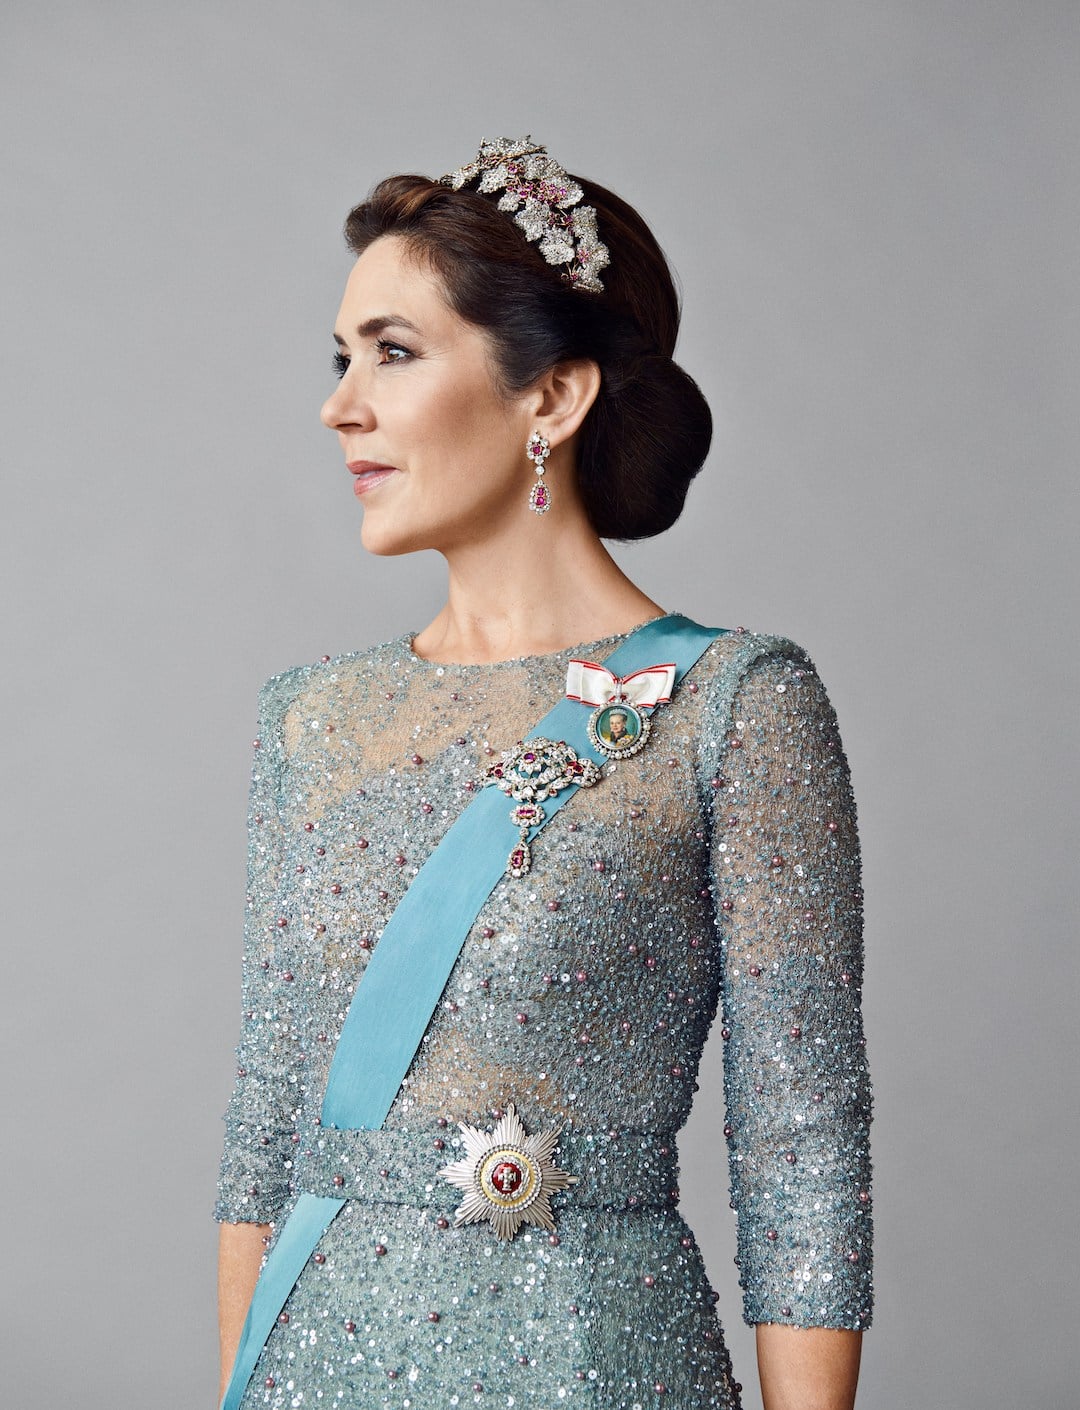 Kronprinzessin Mary: Neue Fotos zeigen sie wie eine Königin